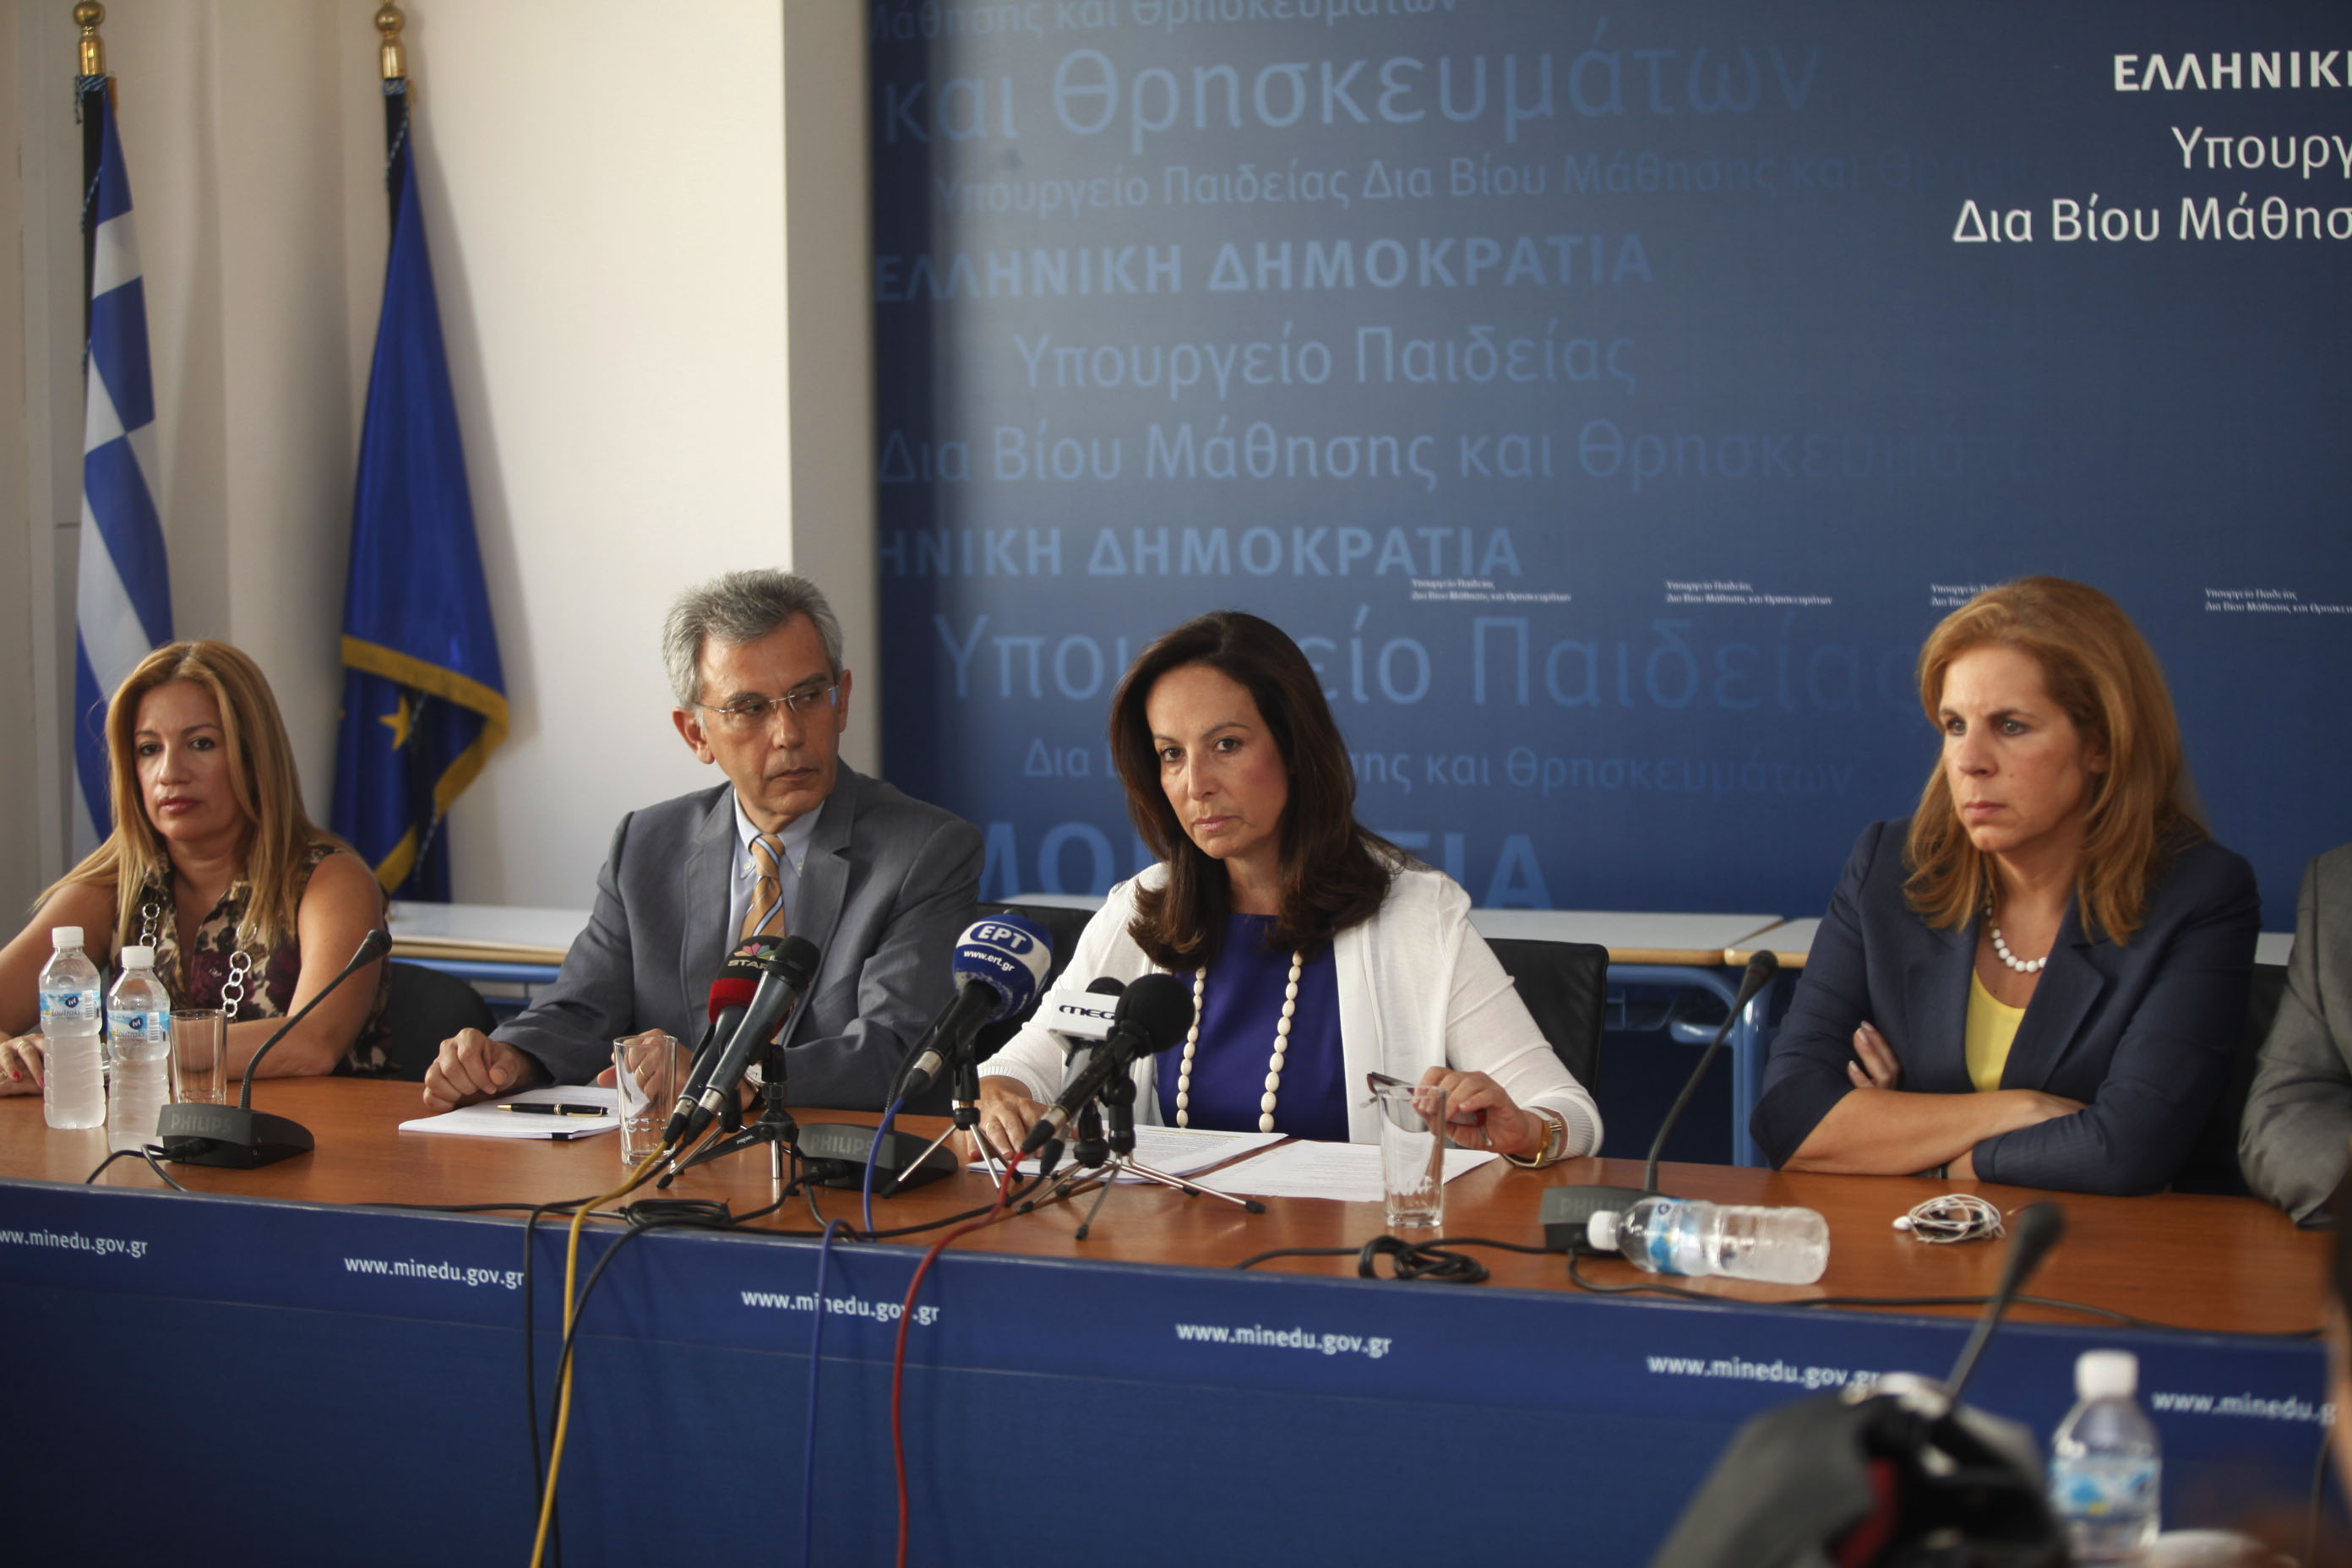 Αννα Διαμαντοπούλου: Με αυτόν τον νόμο η επόμενη 20ετία στα ΑΕΙ